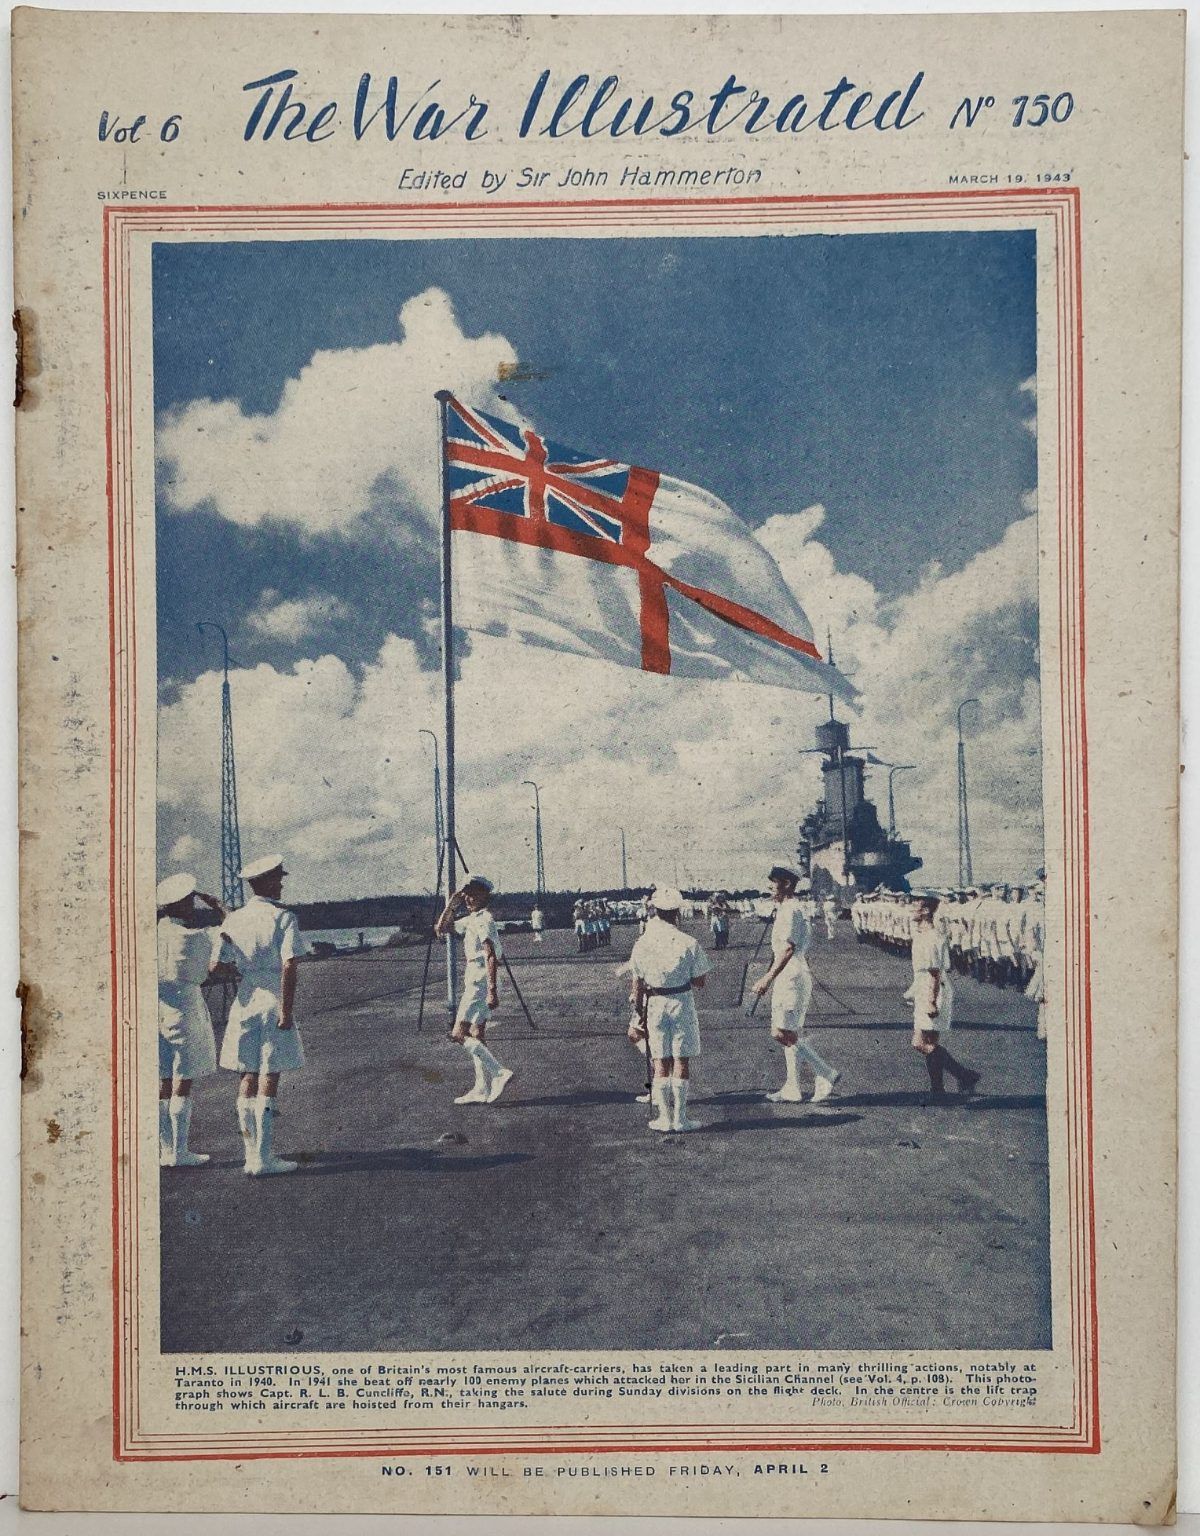 THE WAR ILLUSTRATED - Vol 6, No 150, 19th Mar 1943